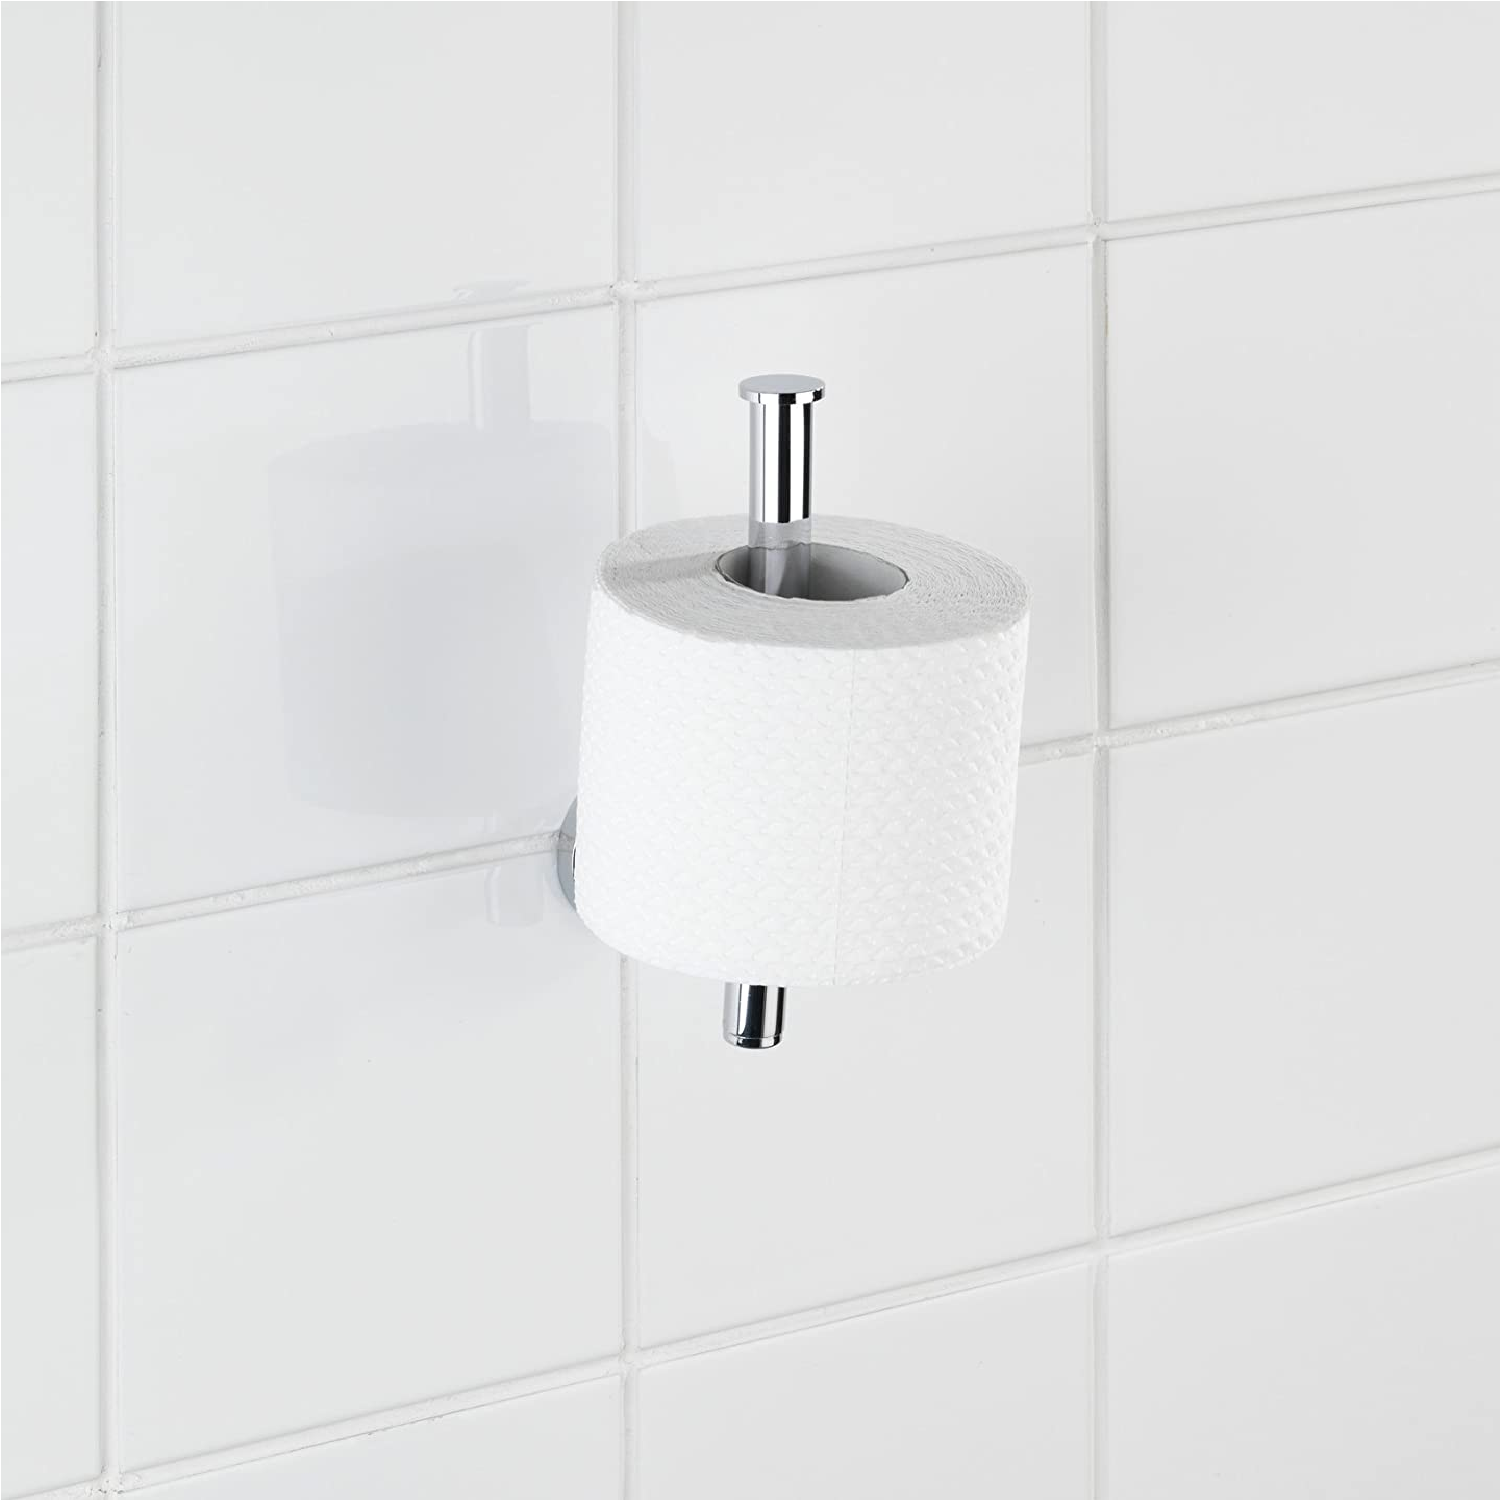 Toilettenpapierhalter-Ersatzrollenhalter Cuba Glänzend - WC-Rollenhalter, Zinkdruckguss, 5 x 18.5 x 8 cm, Chrom